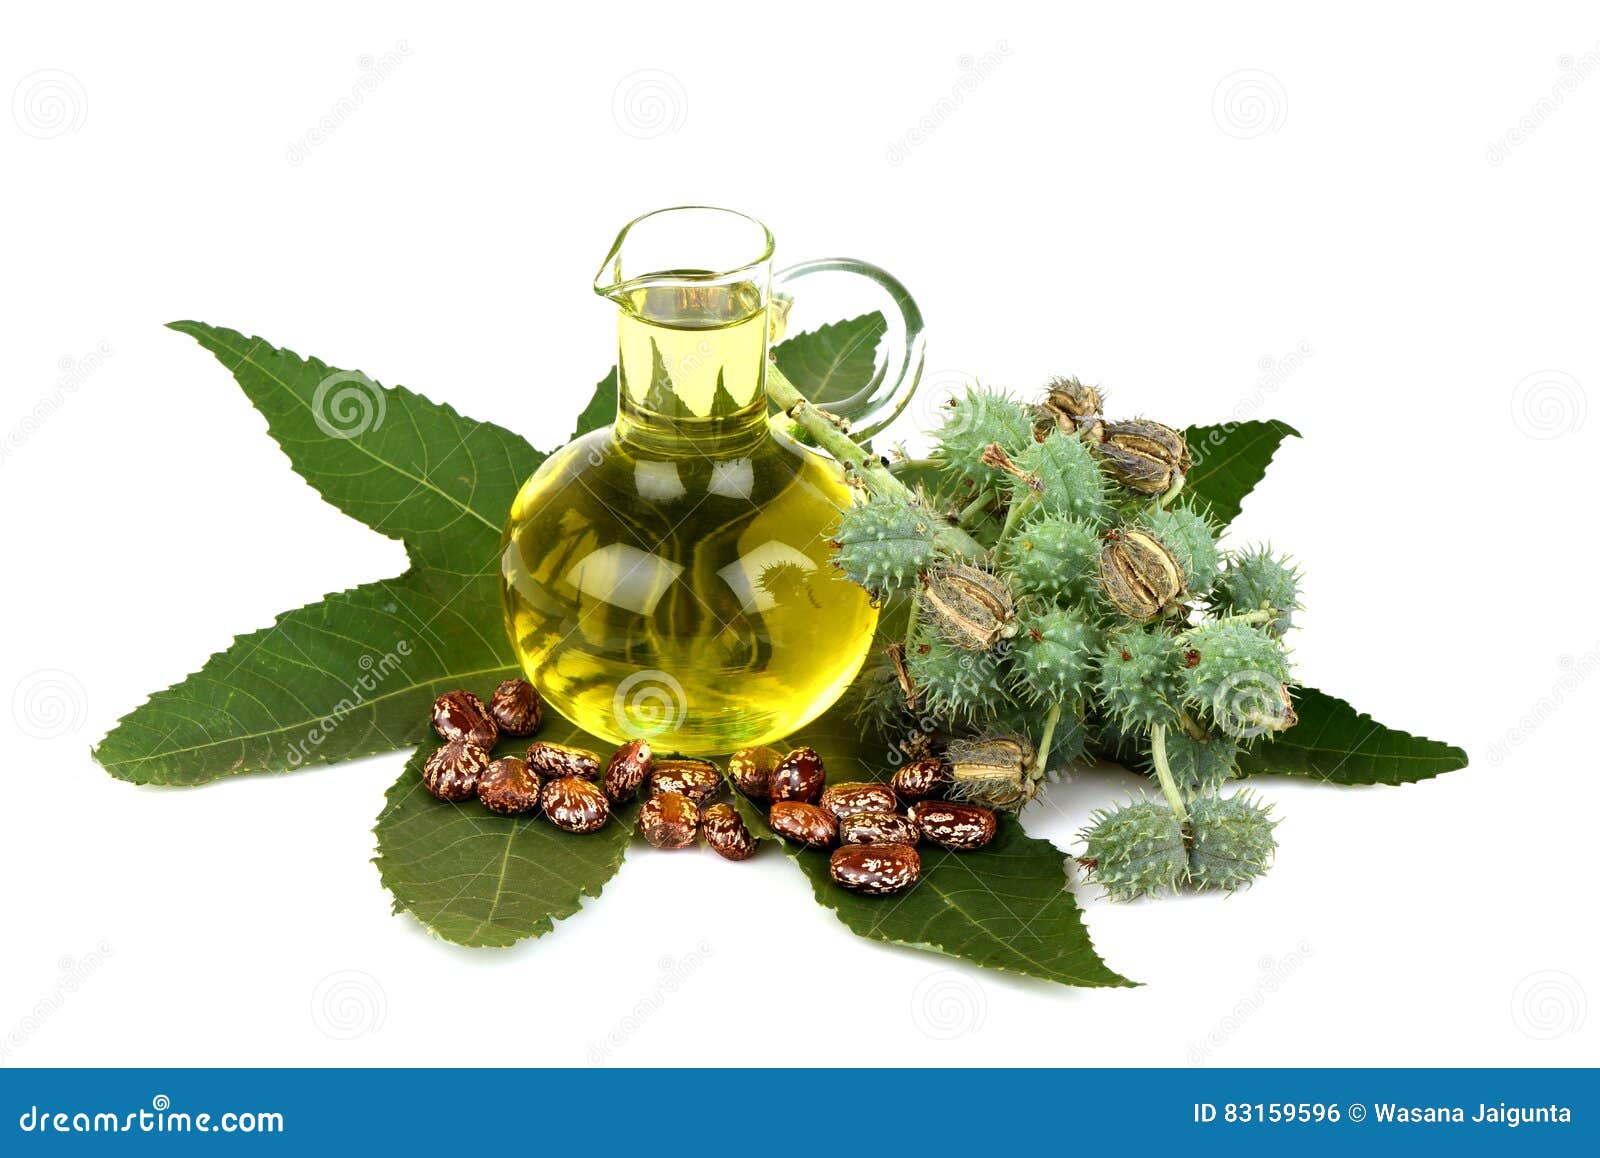 castor oil bottle with castor fruits, seeds and leaf.